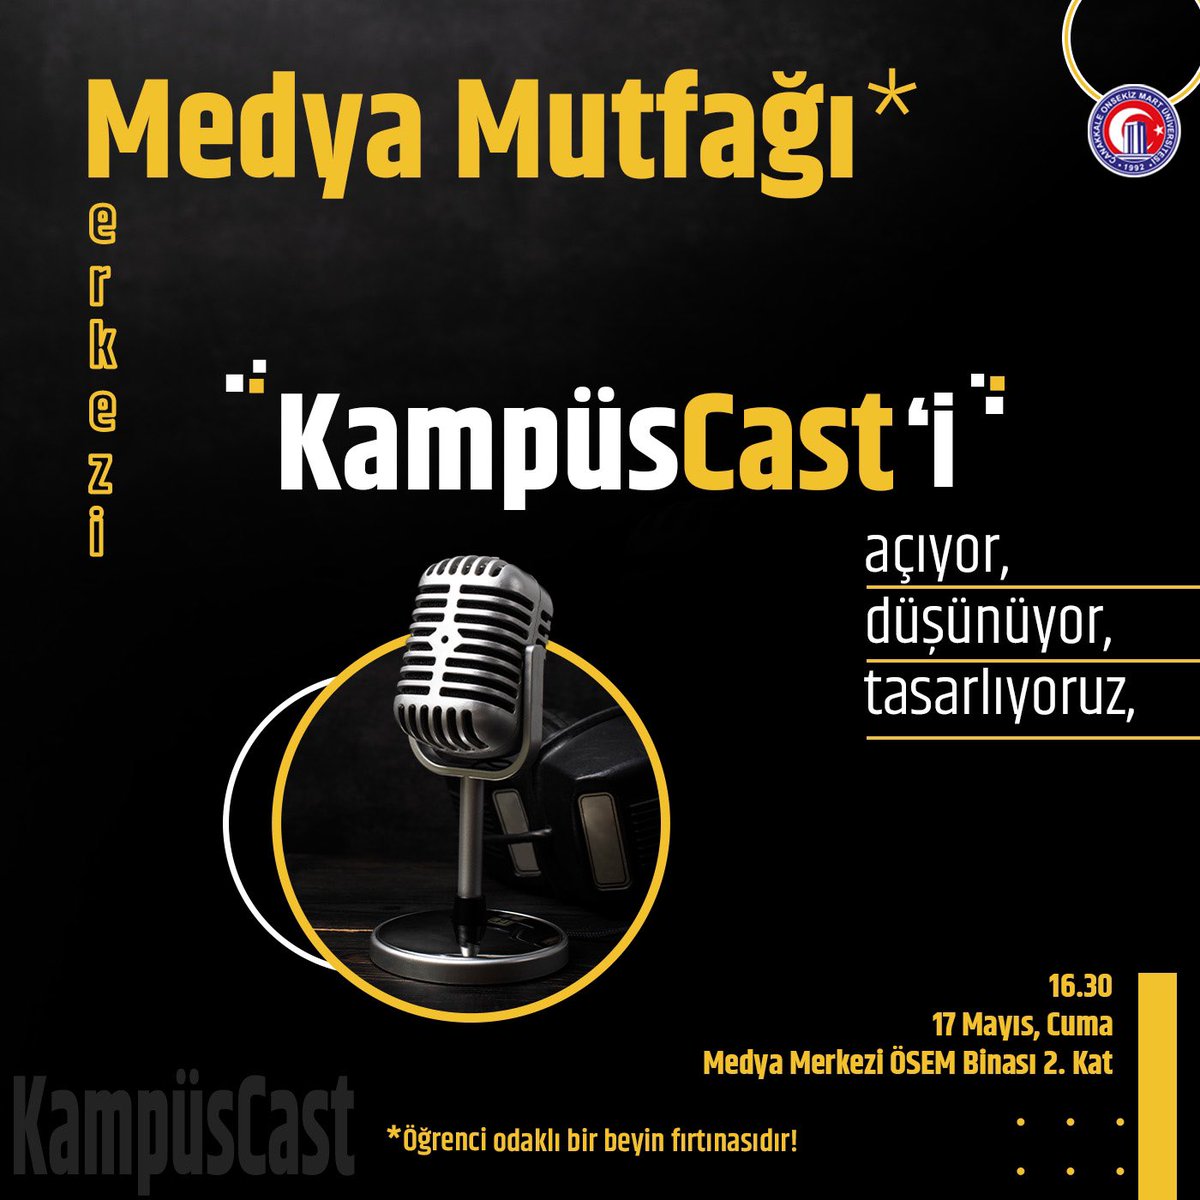 Medya Mutfağı 📻 “#KampüsCast” 🎙️ Öğrenci odaklı beyin fırtınası! 💬📌 ⏰ 16.30 🗓️ 17 Mayıs Cuma 📍 Medya Merkezi ÖSEM Binası 2. Kat @kampusfmcomu @COMUMedyaM #ÇOMÜ #KampüsCast #Podcast #Radyo #TV #Medya #HepBirlikteDahaİleri 🎯